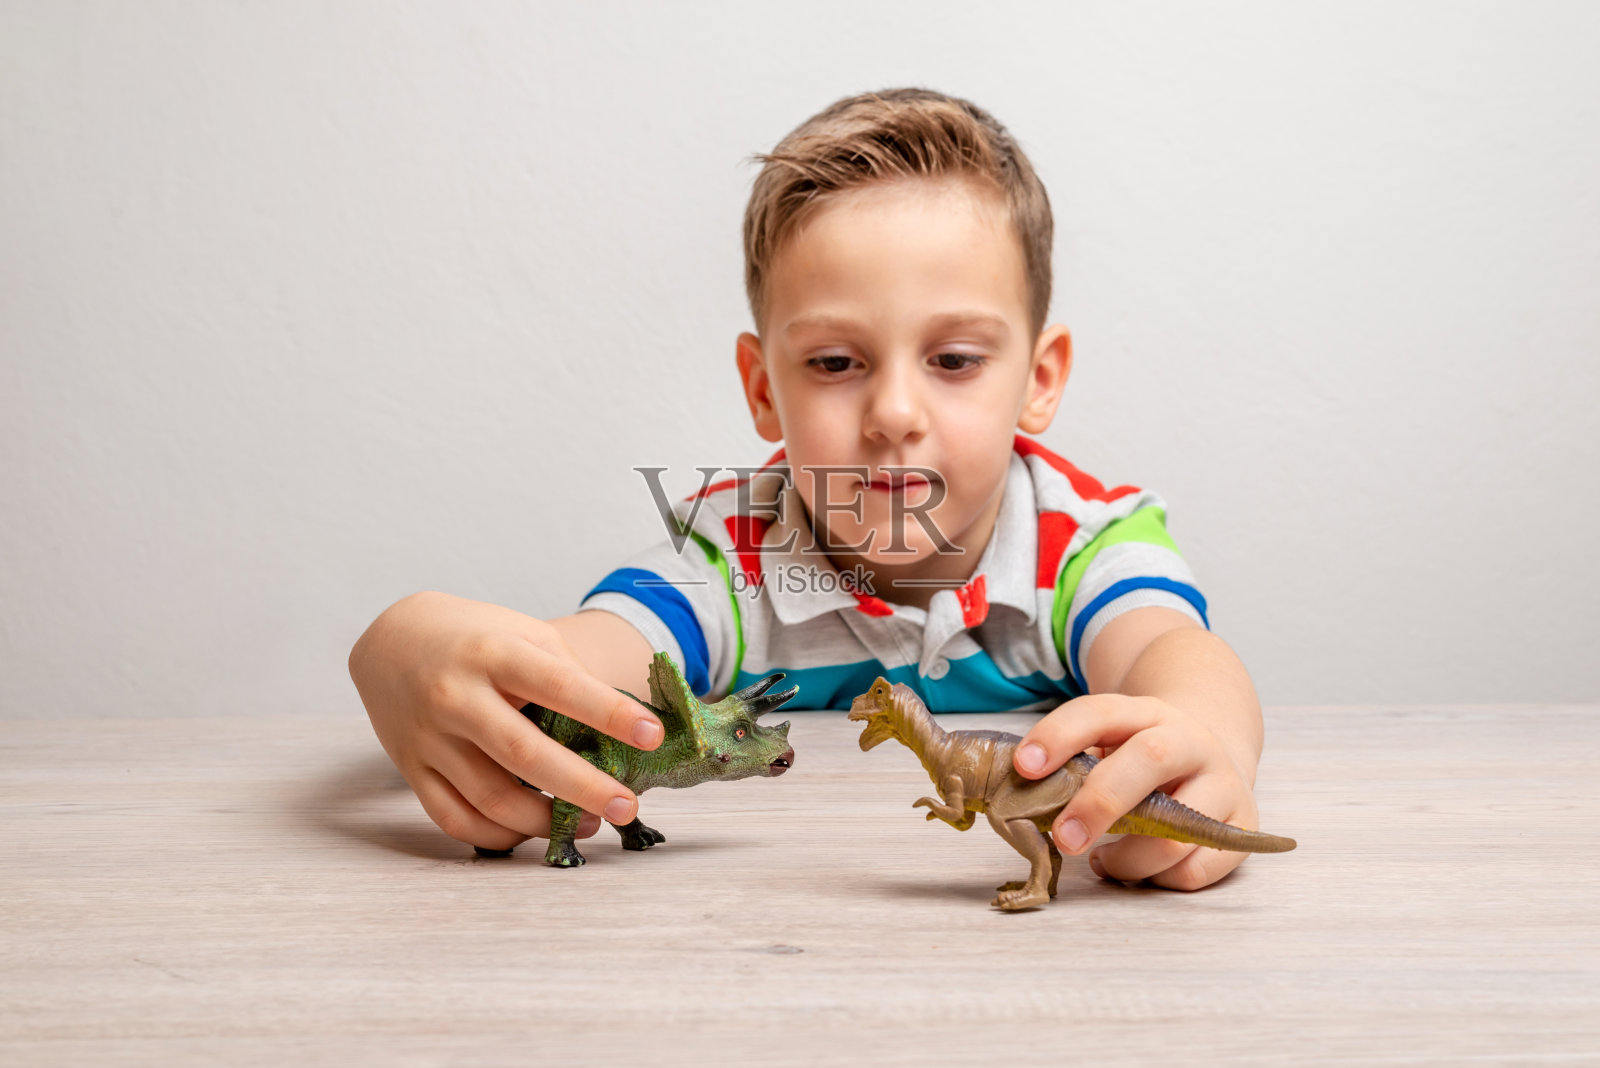 男孩拿着恐龙玩具。通过游戏培养儿童注意力的概念照片摄影图片